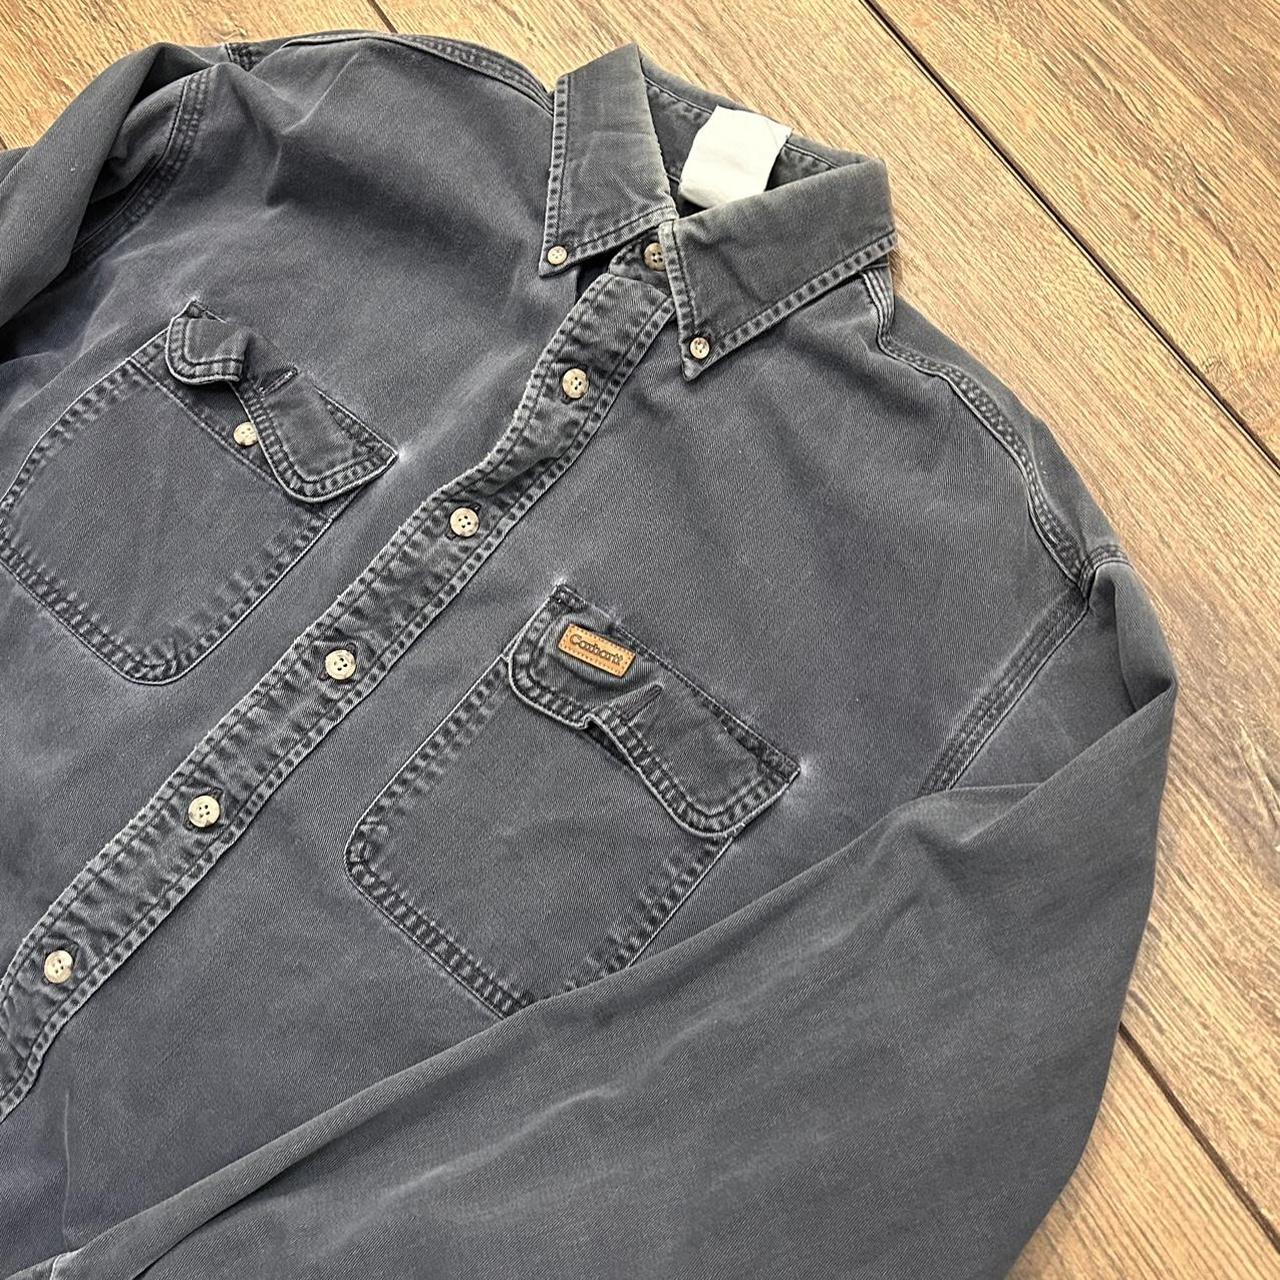 Vintage Carhartt Button Up Shirt Height:... - Depop